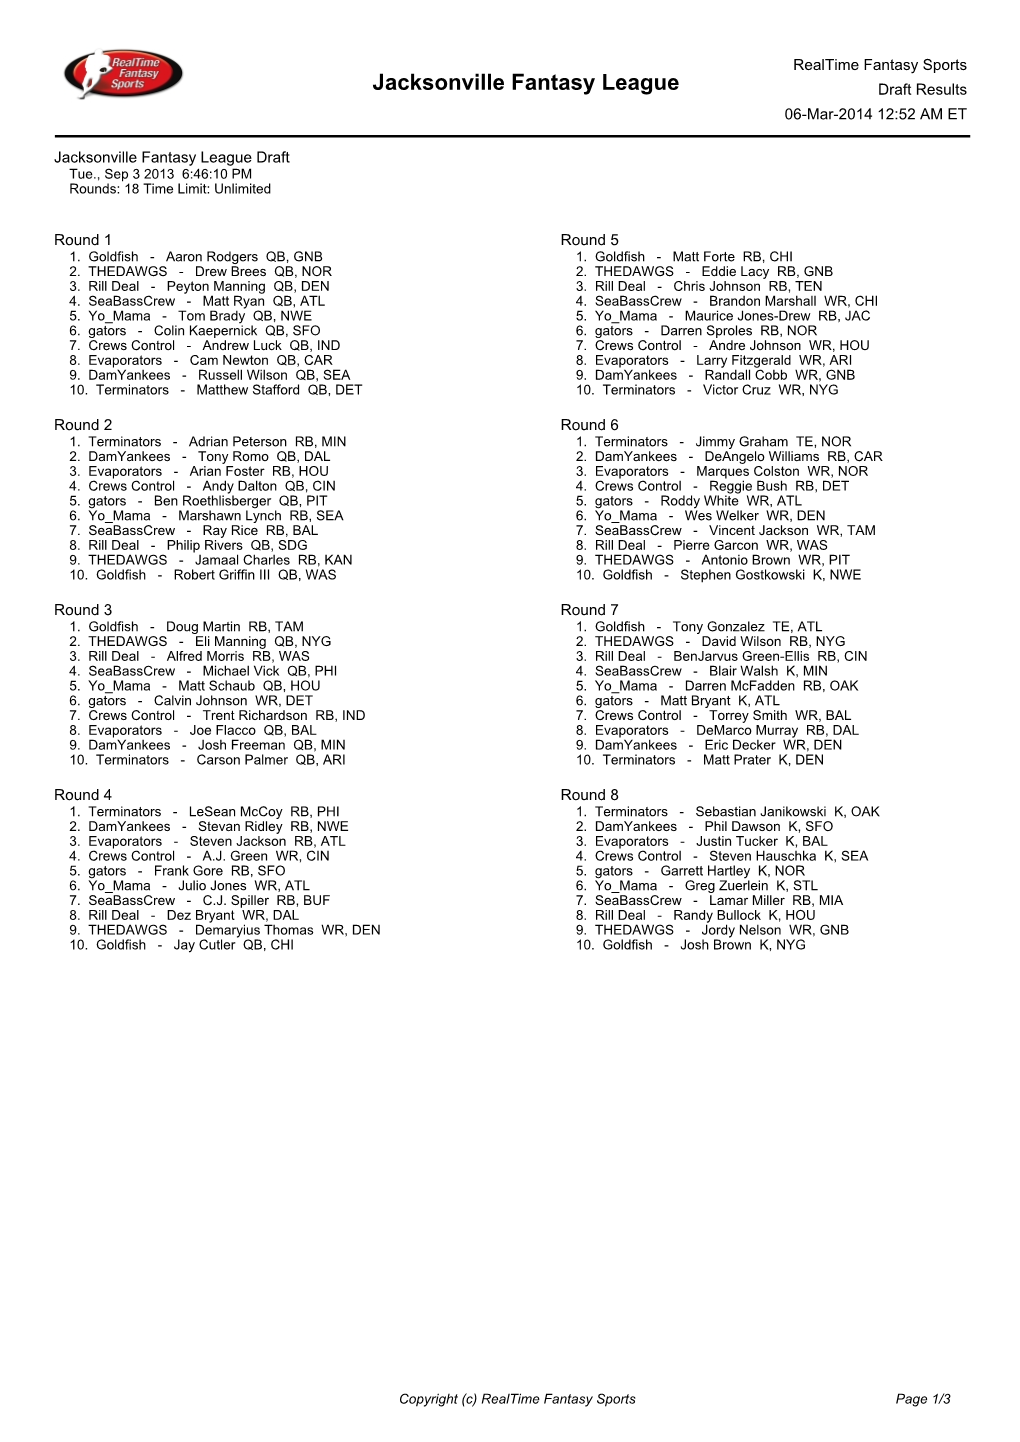 Jacksonville Fantasy League Draft Results 06-Mar-2014 12:52 AM ET